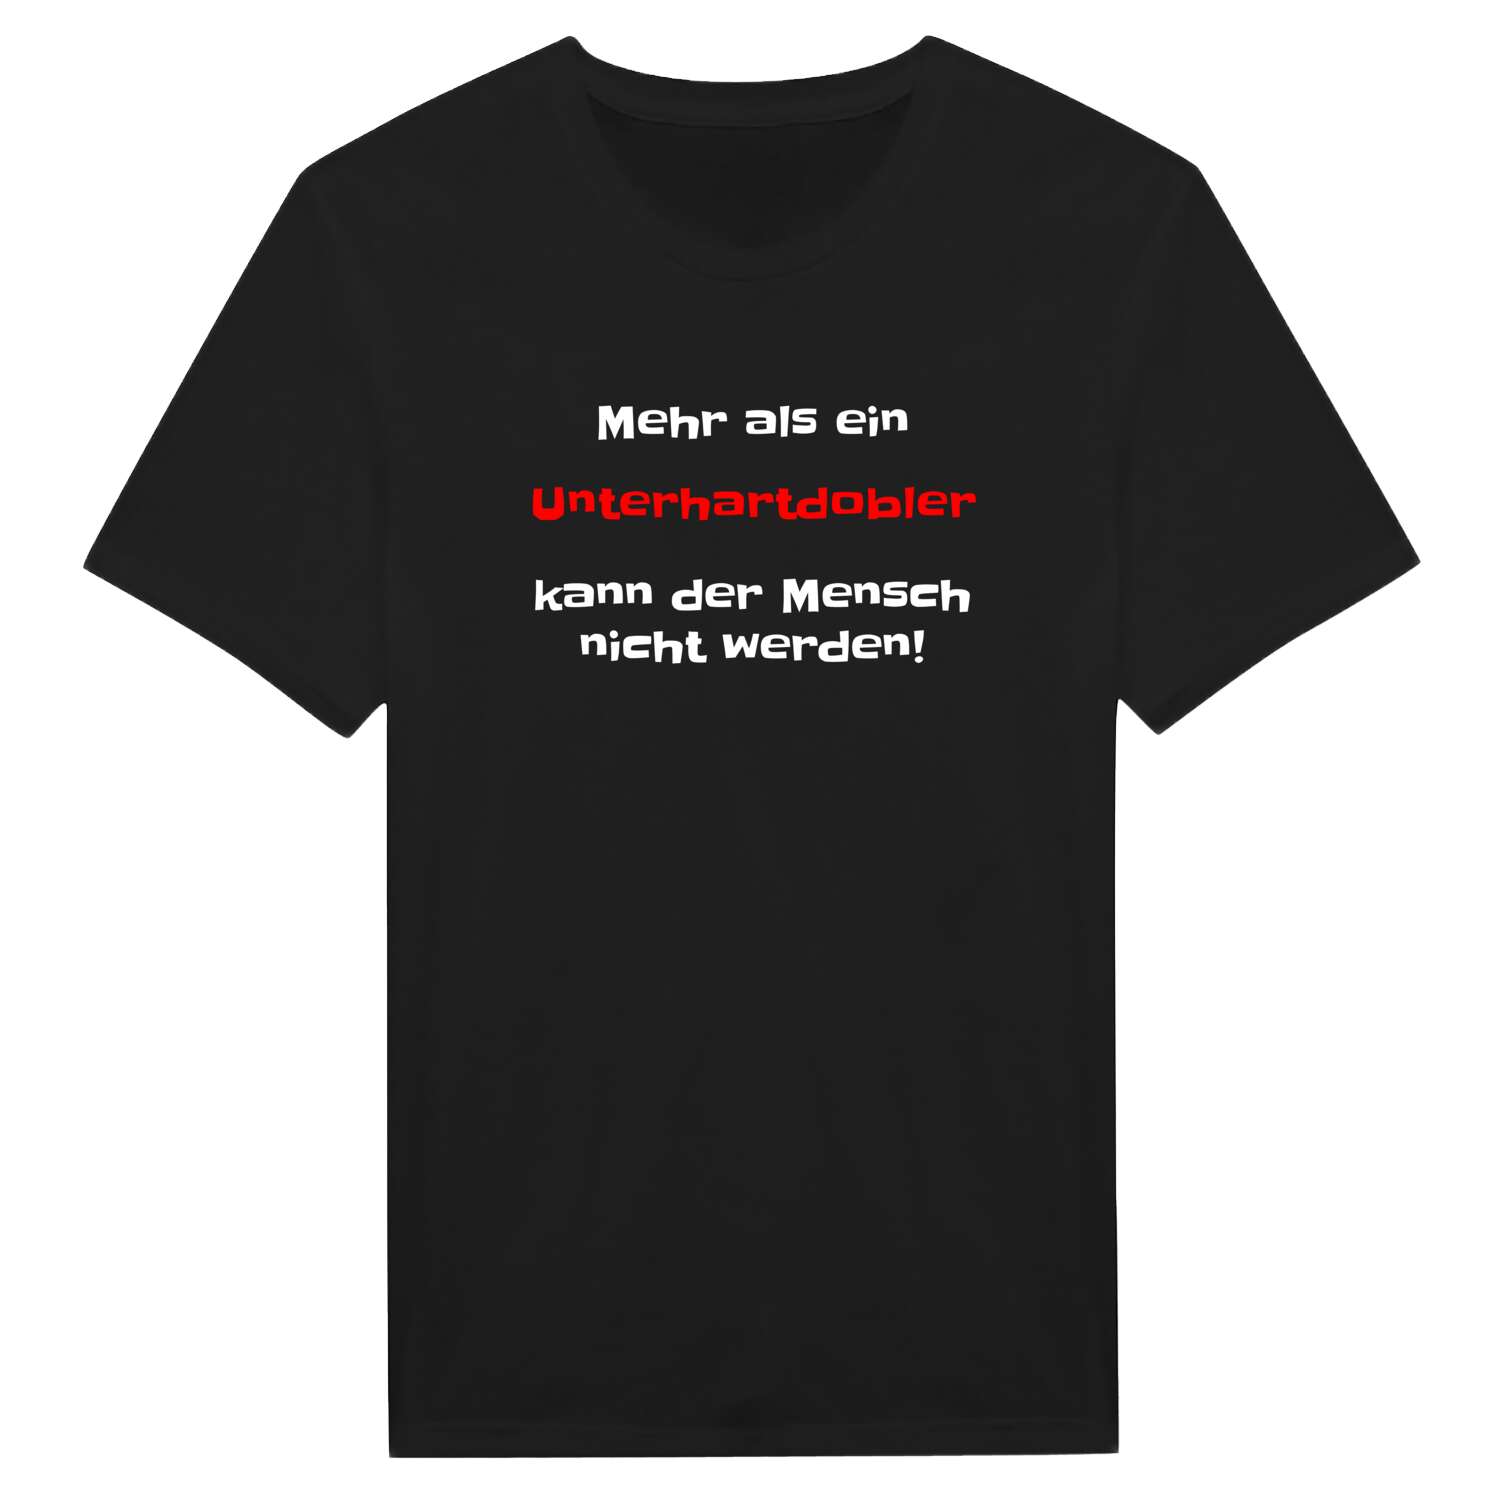 Unterhartdobl T-Shirt »Mehr als ein«